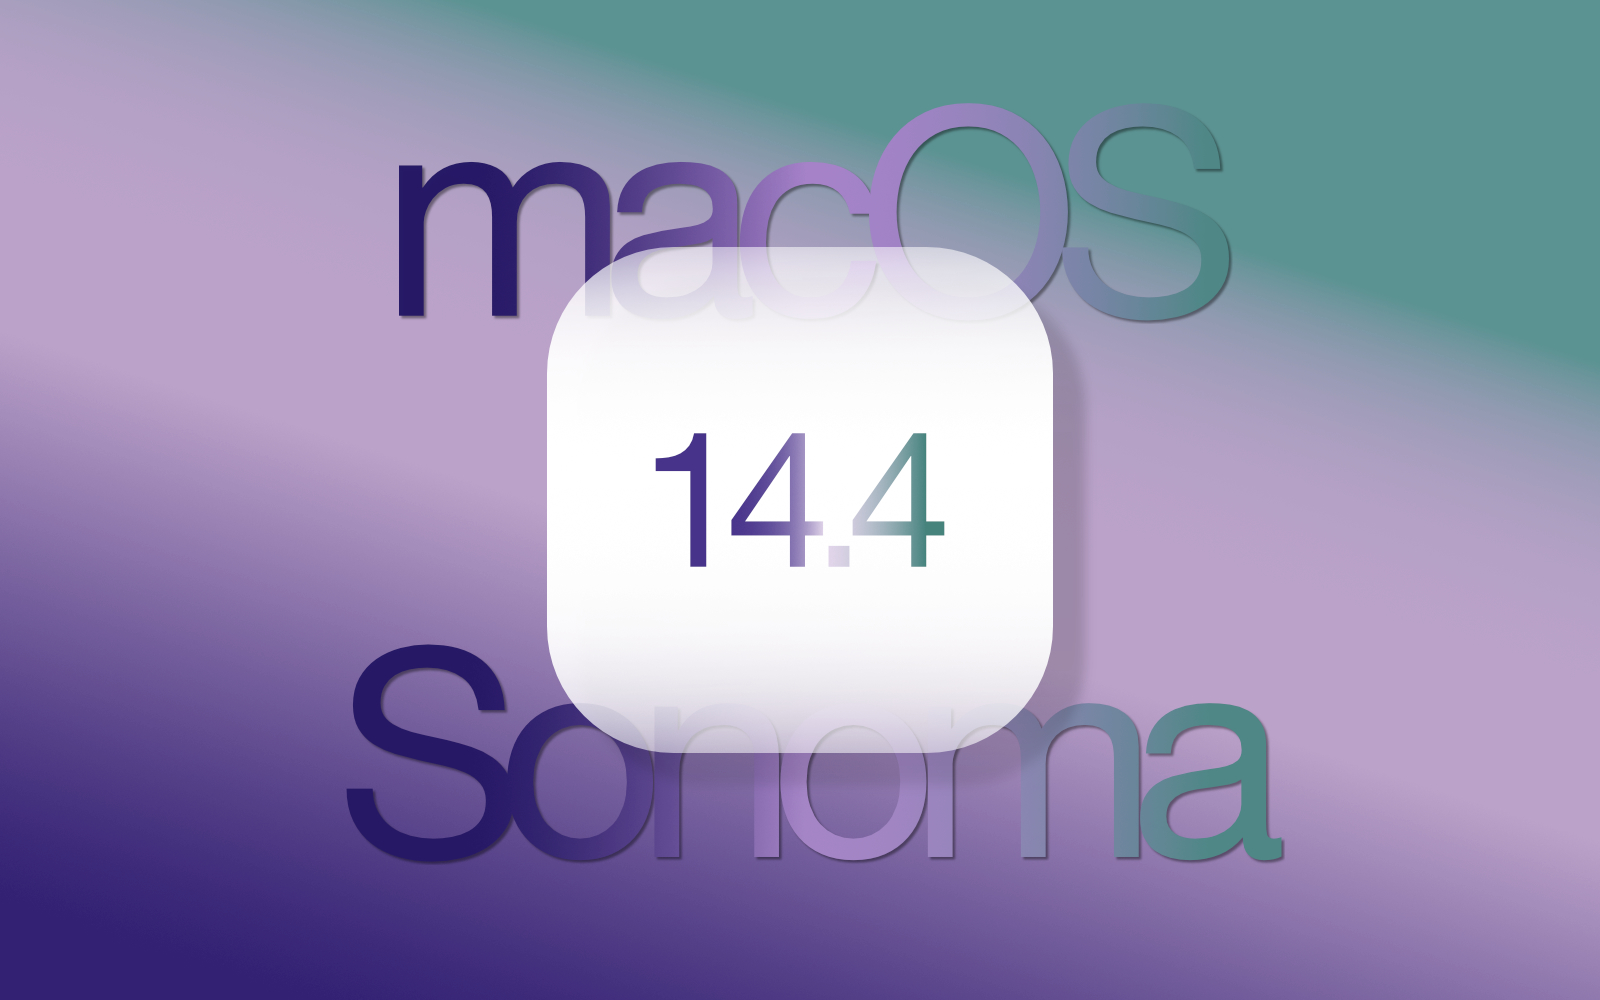 MacOS Sonoma 14 4 update